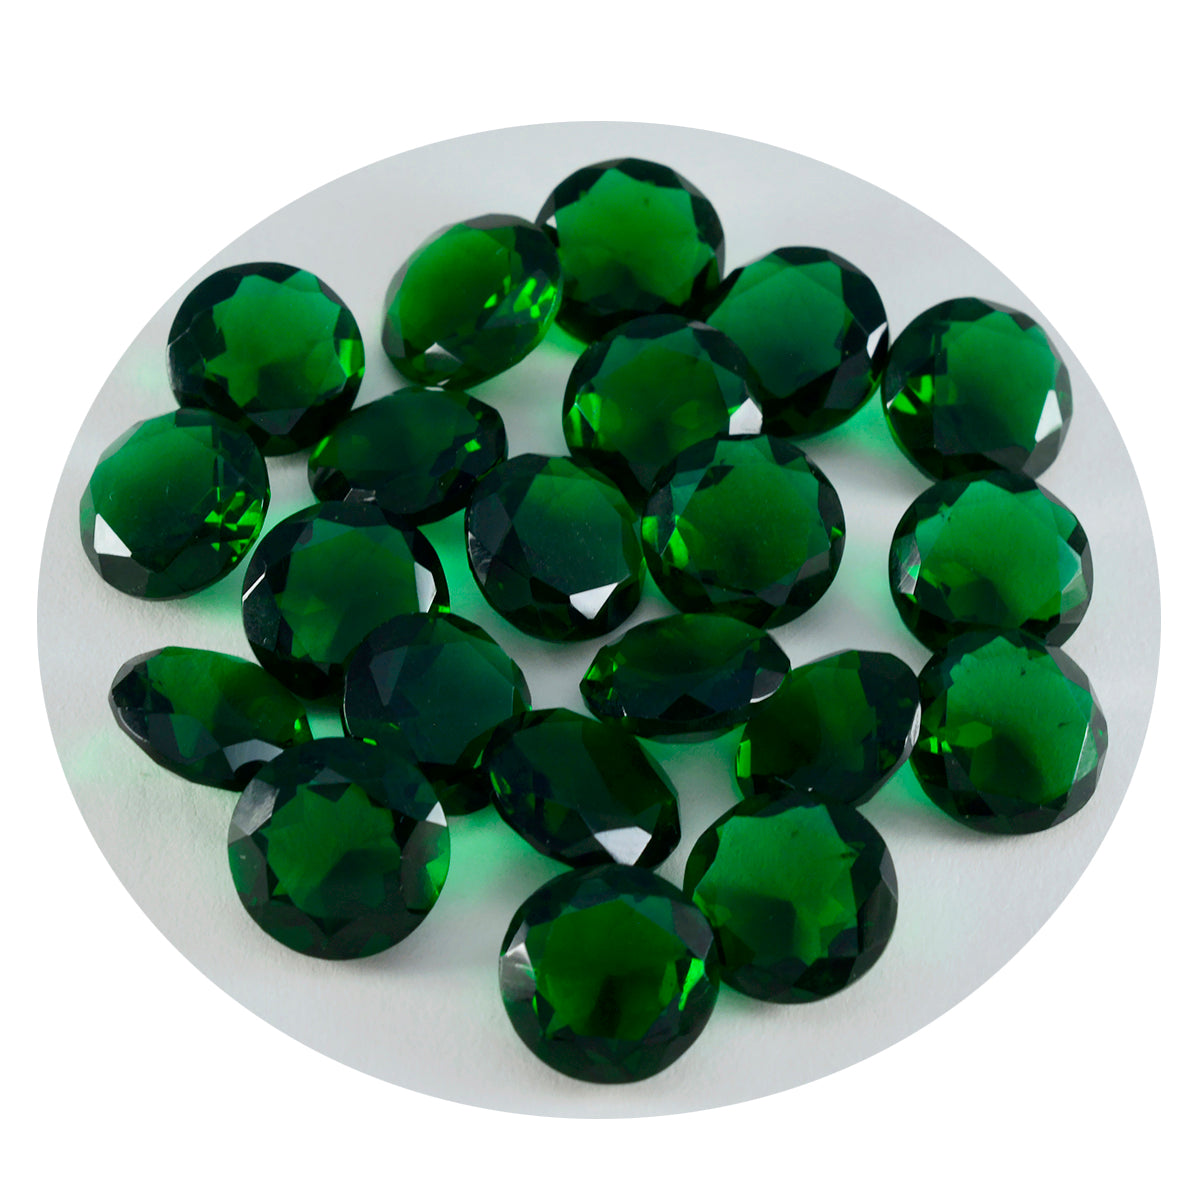 Riyogems 1 Stück grüner Smaragd, CZ, facettiert, 8 x 8 mm, runde Form, lose Edelsteine in AAA-Qualität